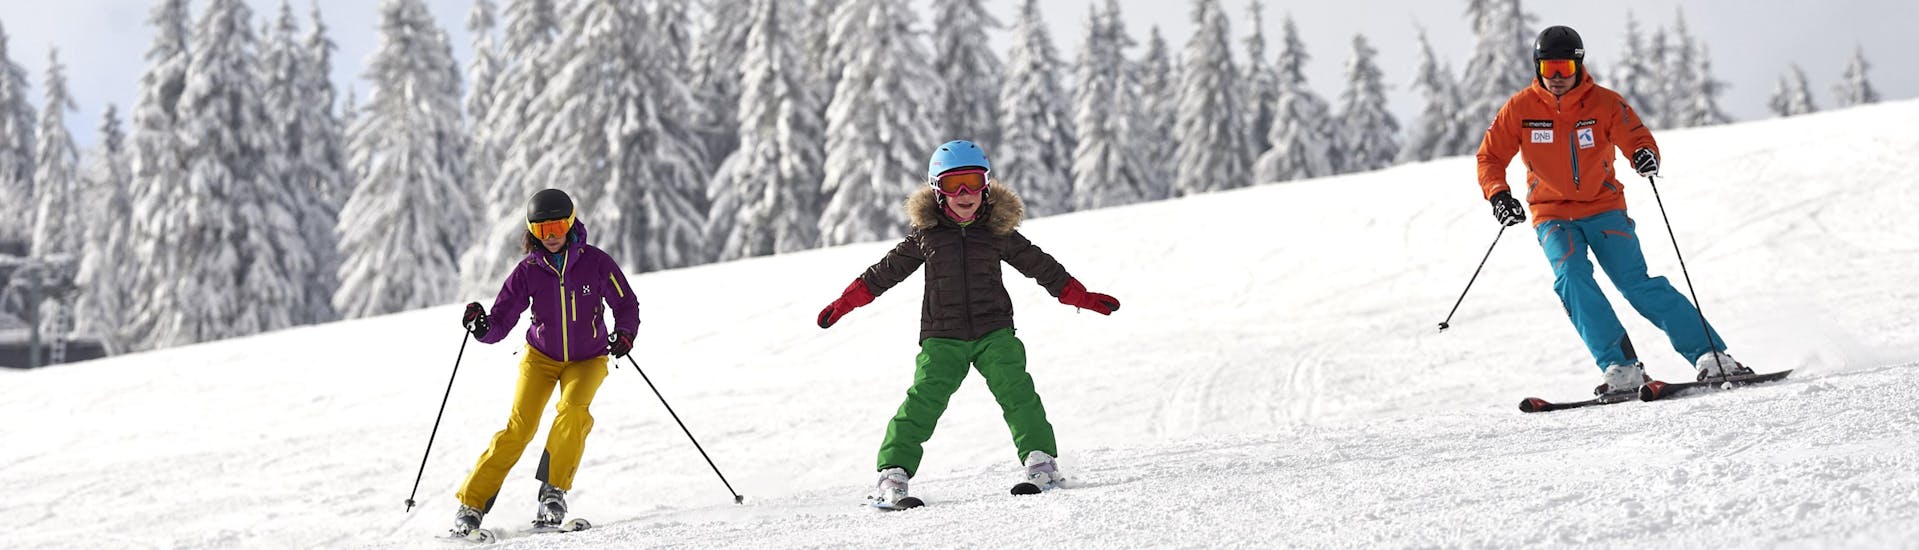 Una maravillosa vista de un soleado paisaje en la cima de la estación de esquí Großer Arber, punto de encuentro de las escuelas de esquí para comenzar sus clases de esquí y snowboard.